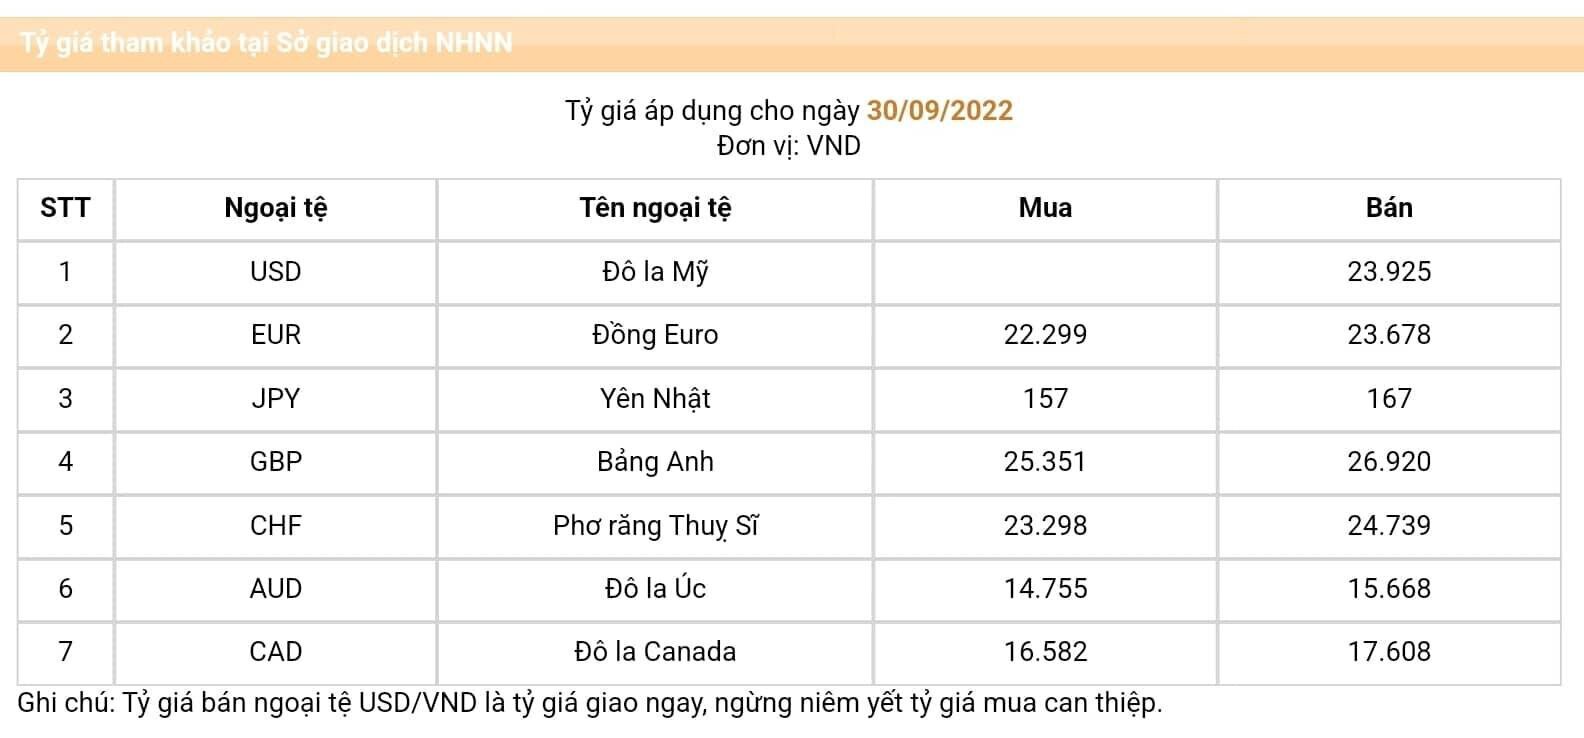 Vỡ tỷ giá VND sẽ ảnh hưởng tới cổ phiếu Việt Nam như thế nào?